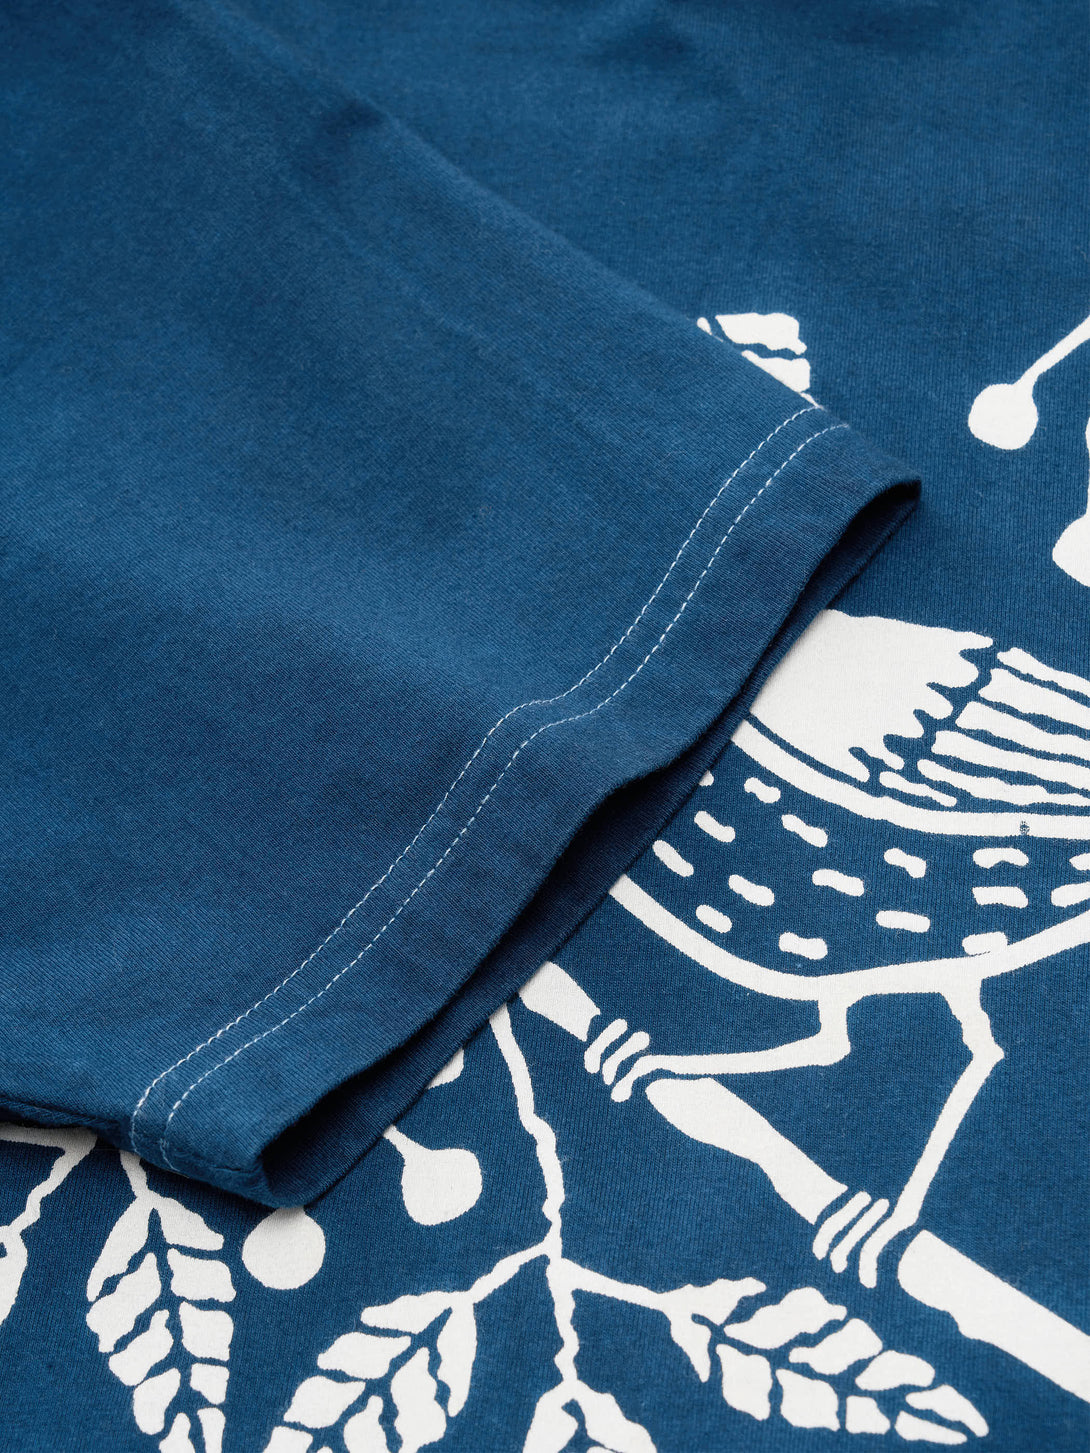 インディゴ染めのシンプルでクラシックなデザインのTシャツ、柔らかくしっかりとしたコットン生地インディゴ染めTシャツの滑らかな肌触りのコーマ糸生地、吸汗性と速乾性に優れた素材